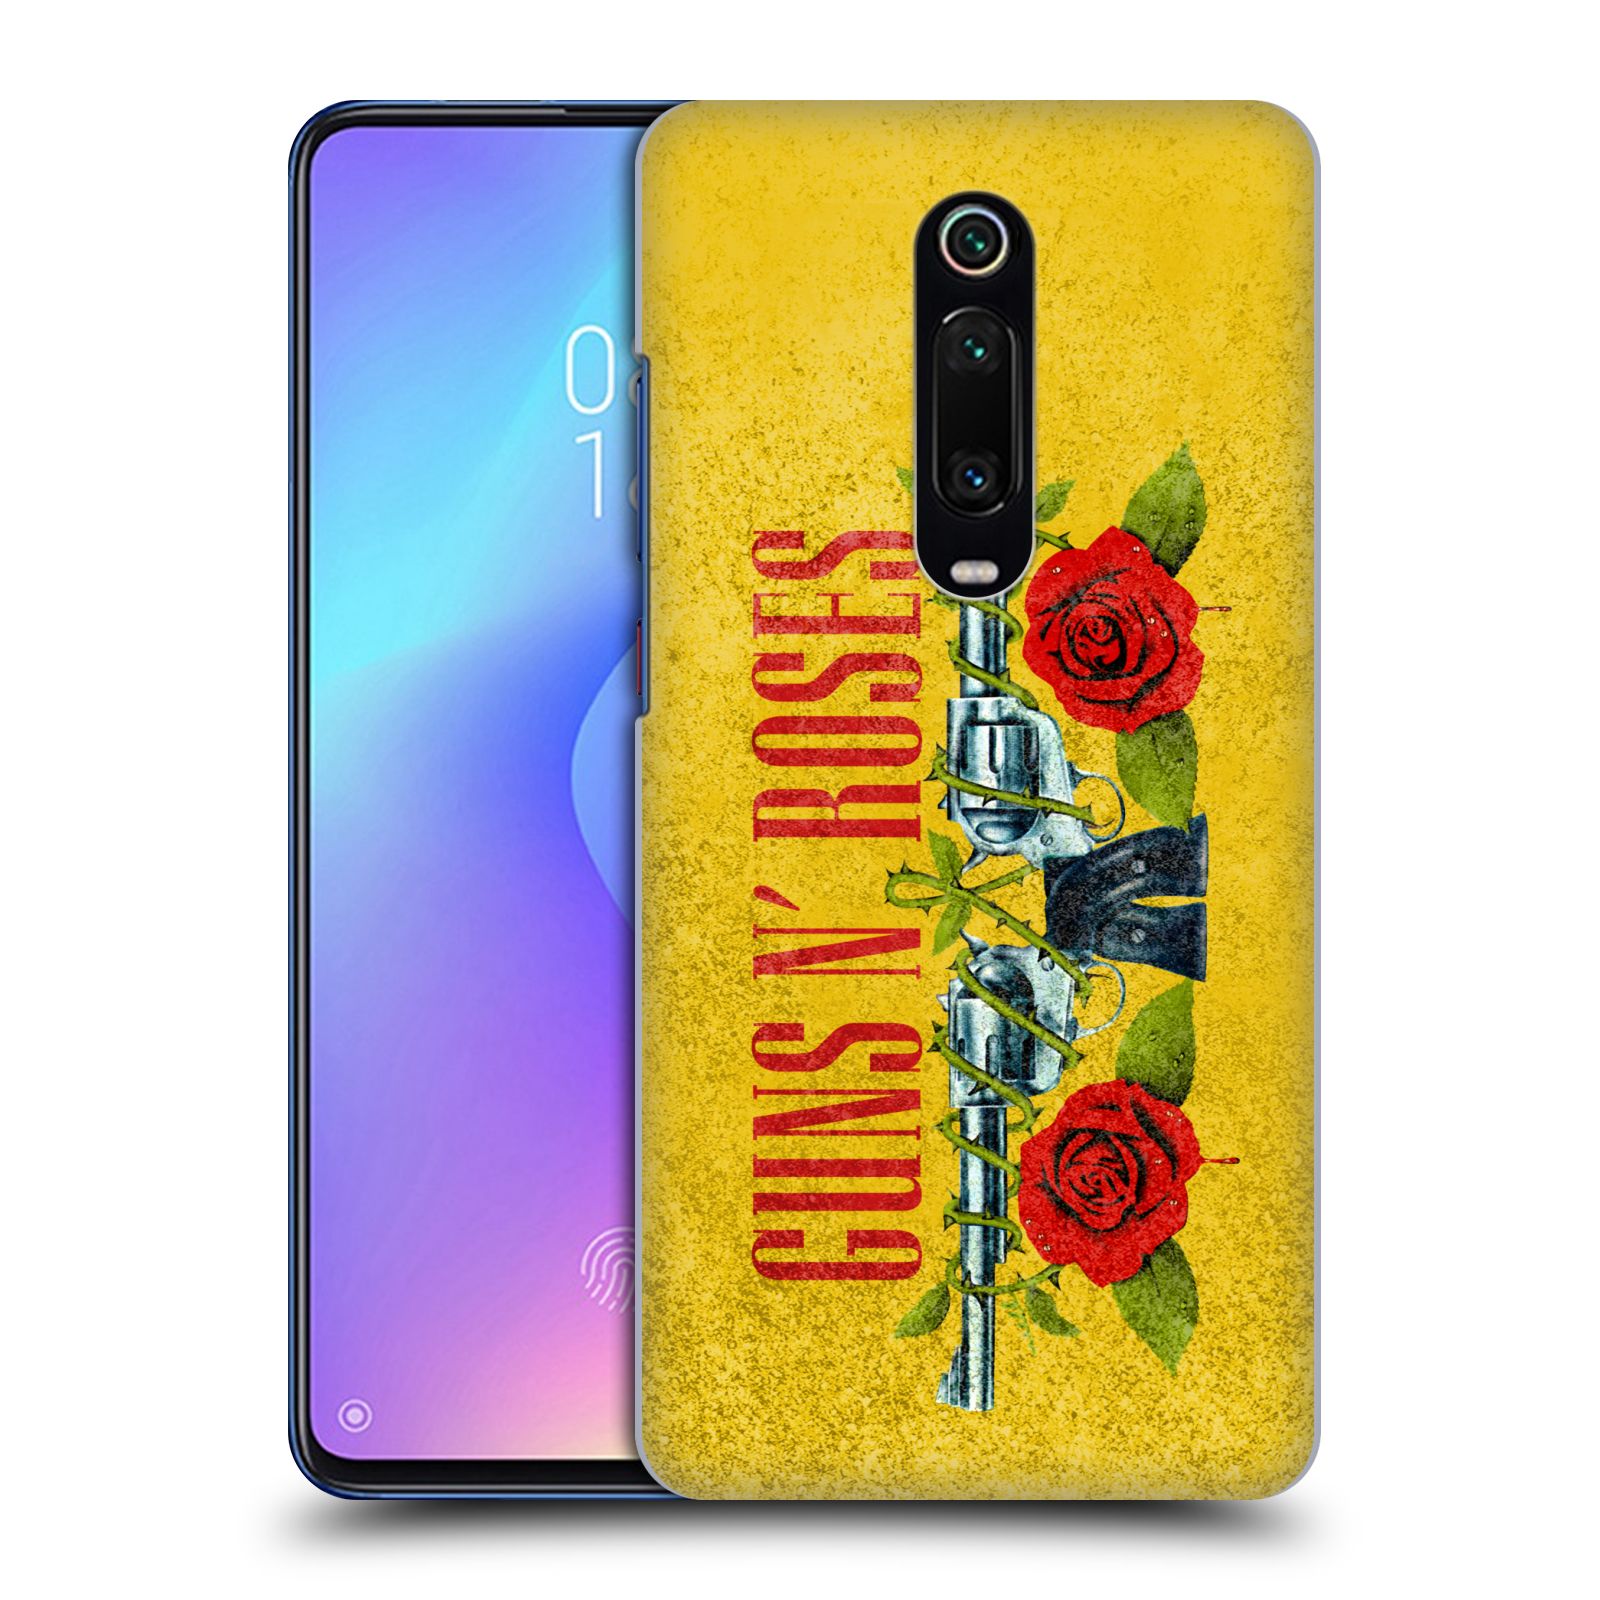 Pouzdro na mobil Xiaomi Mi 9T PRO - HEAD CASE - hudební skupina Guns N Roses pistole a růže žluté pozadí